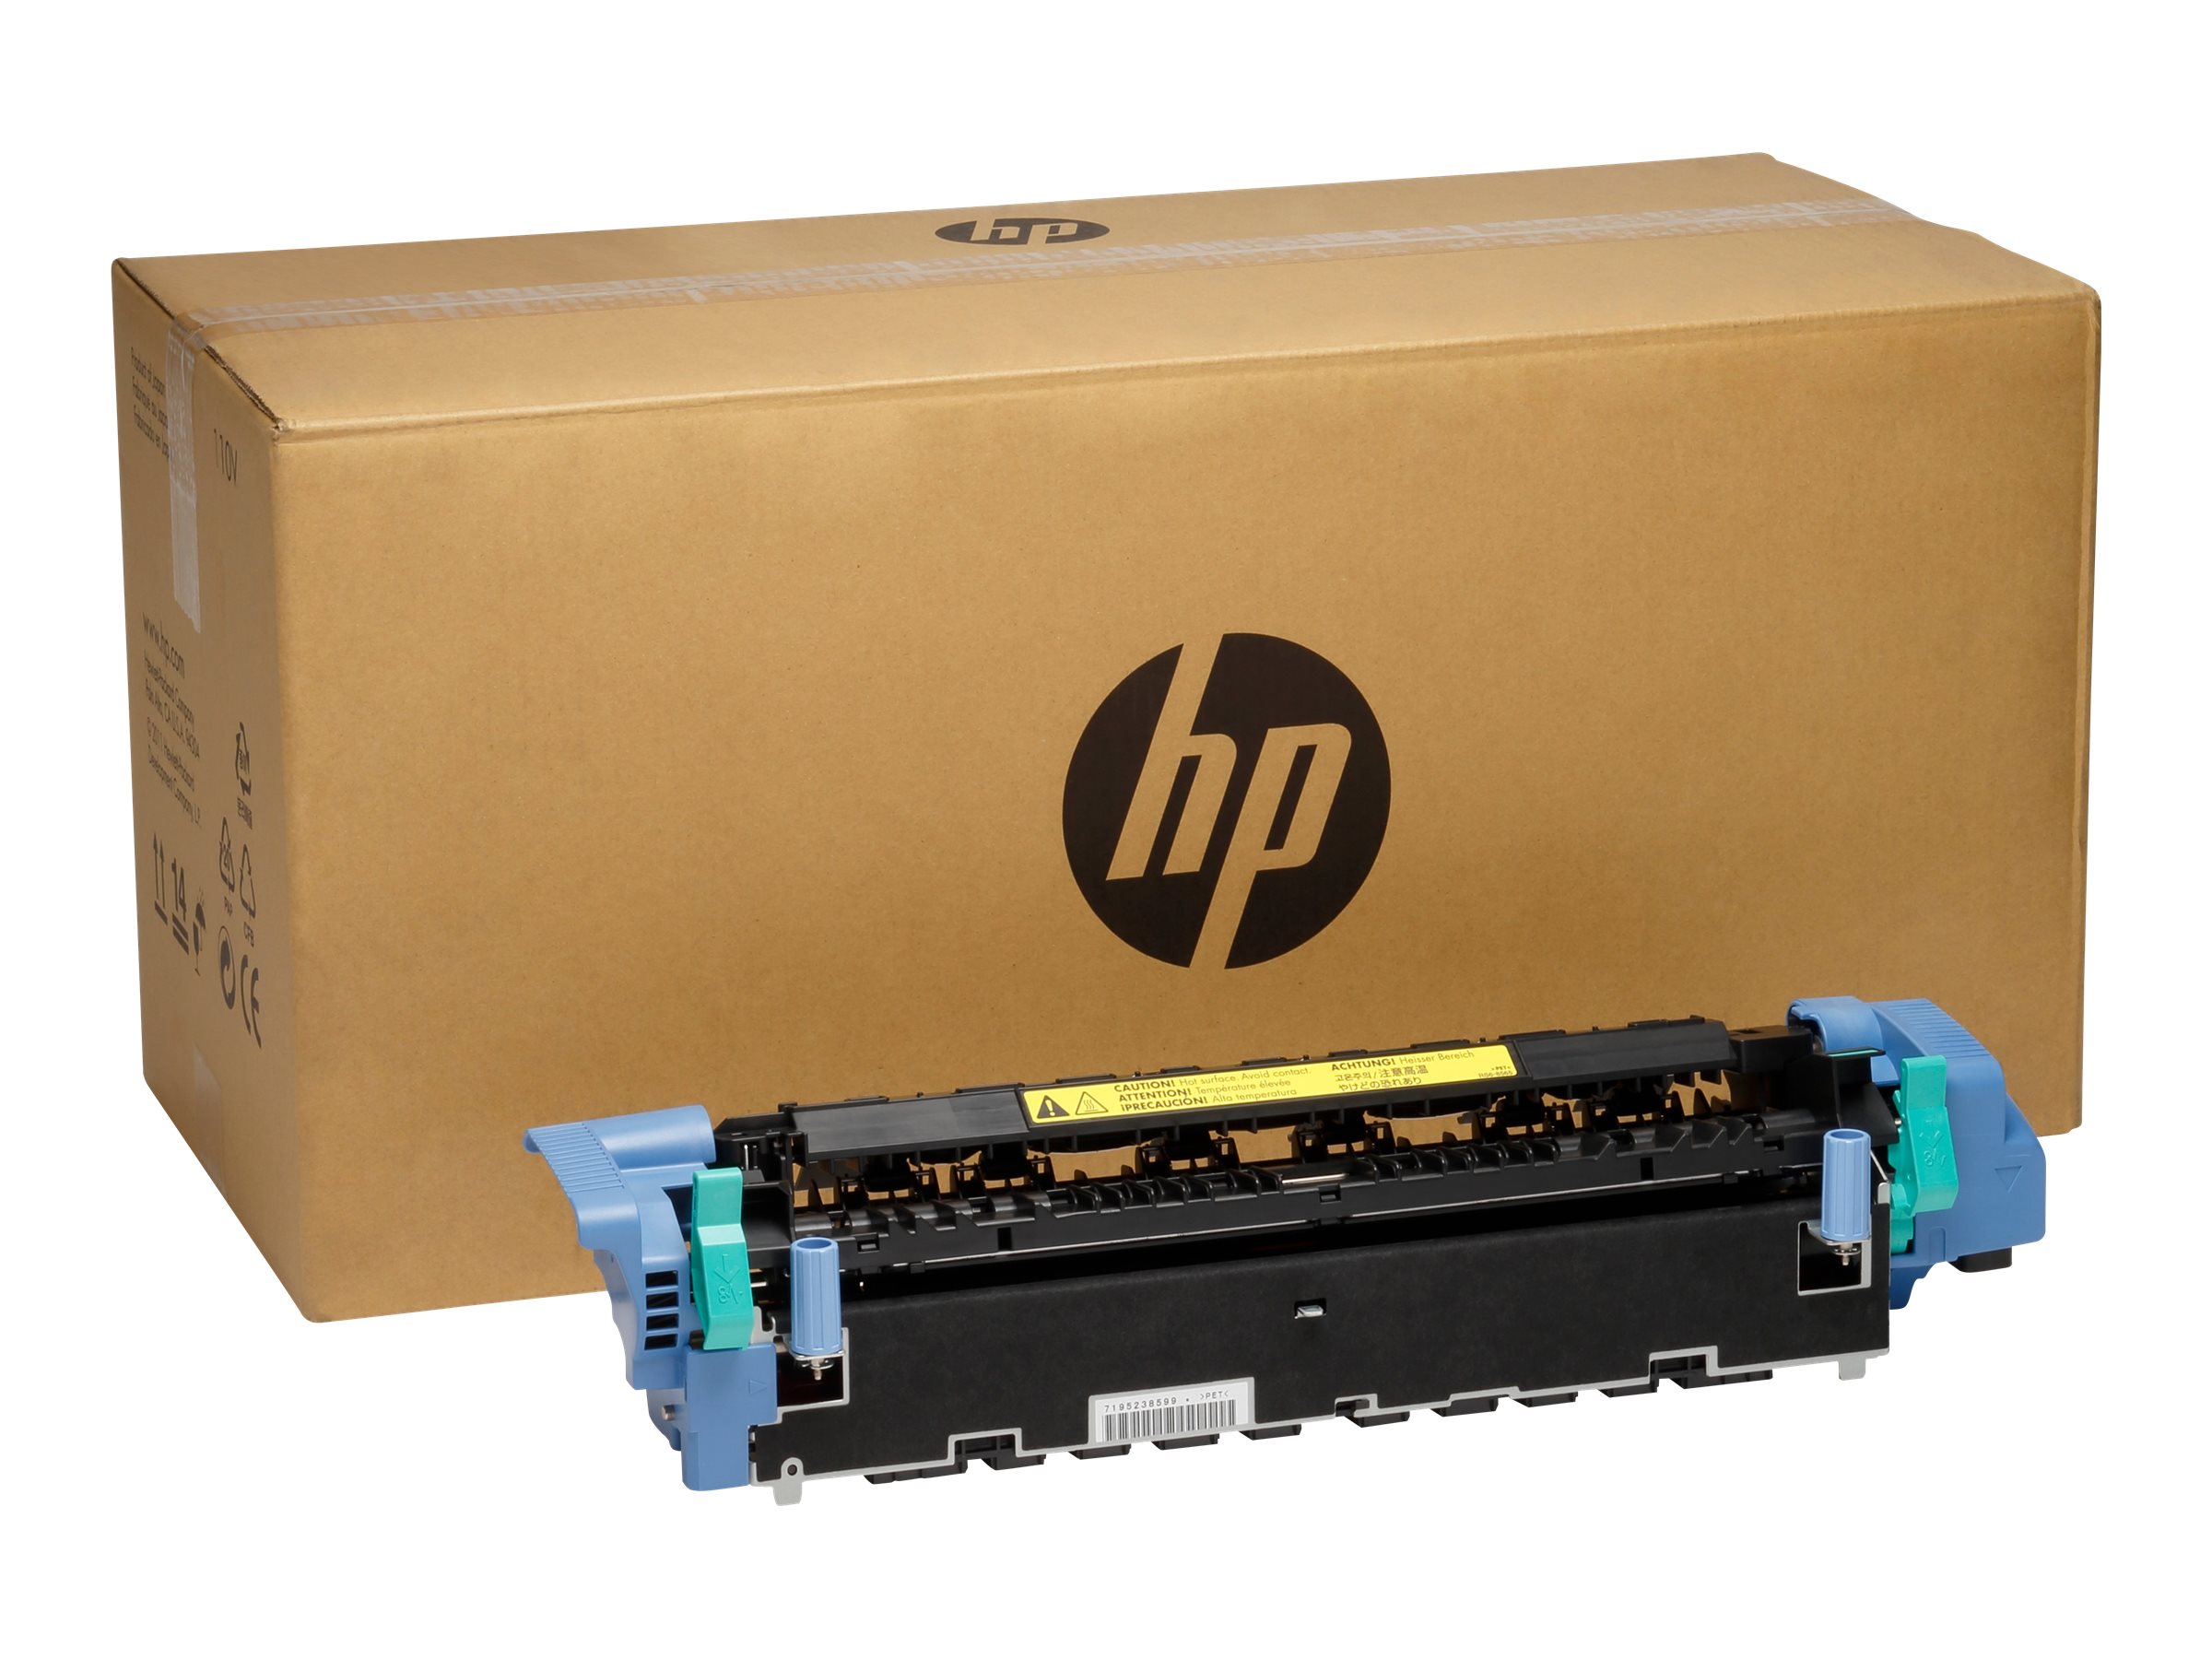 HP Fixiereinheit 220V für HP CLJ 5550 Serie (Image Fuser-Kit)